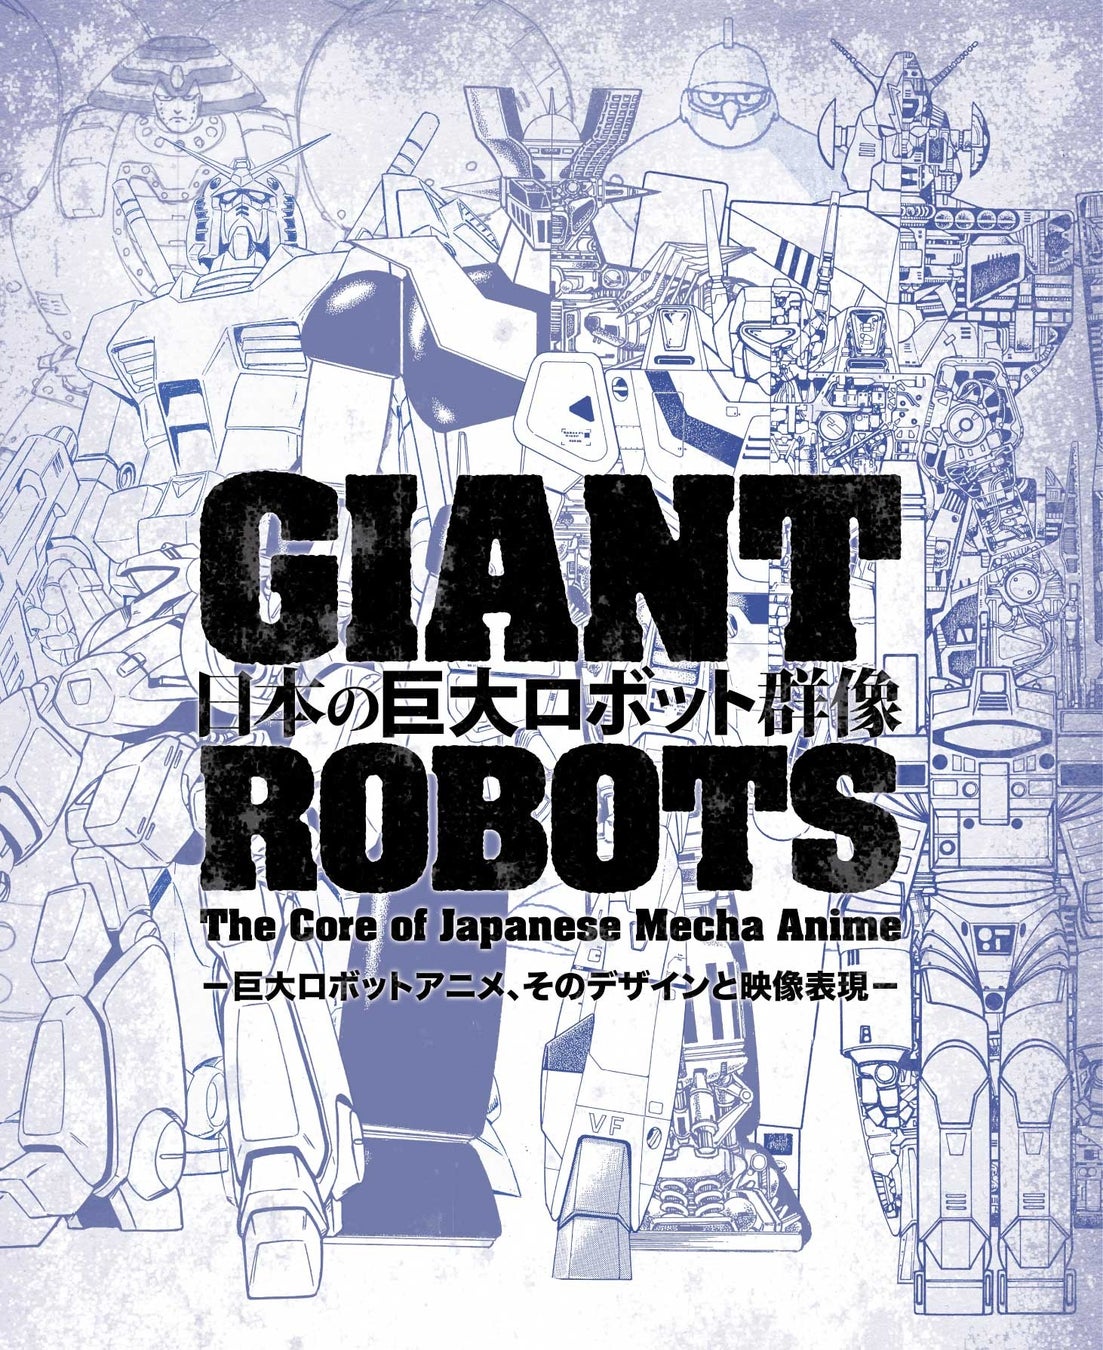 銀河万丈＆水樹奈々が音声ガイドナレーションに決定！「巨大ロボットとは何か」を問いかけるかつてない展覧会『日本の巨大ロボット群像』